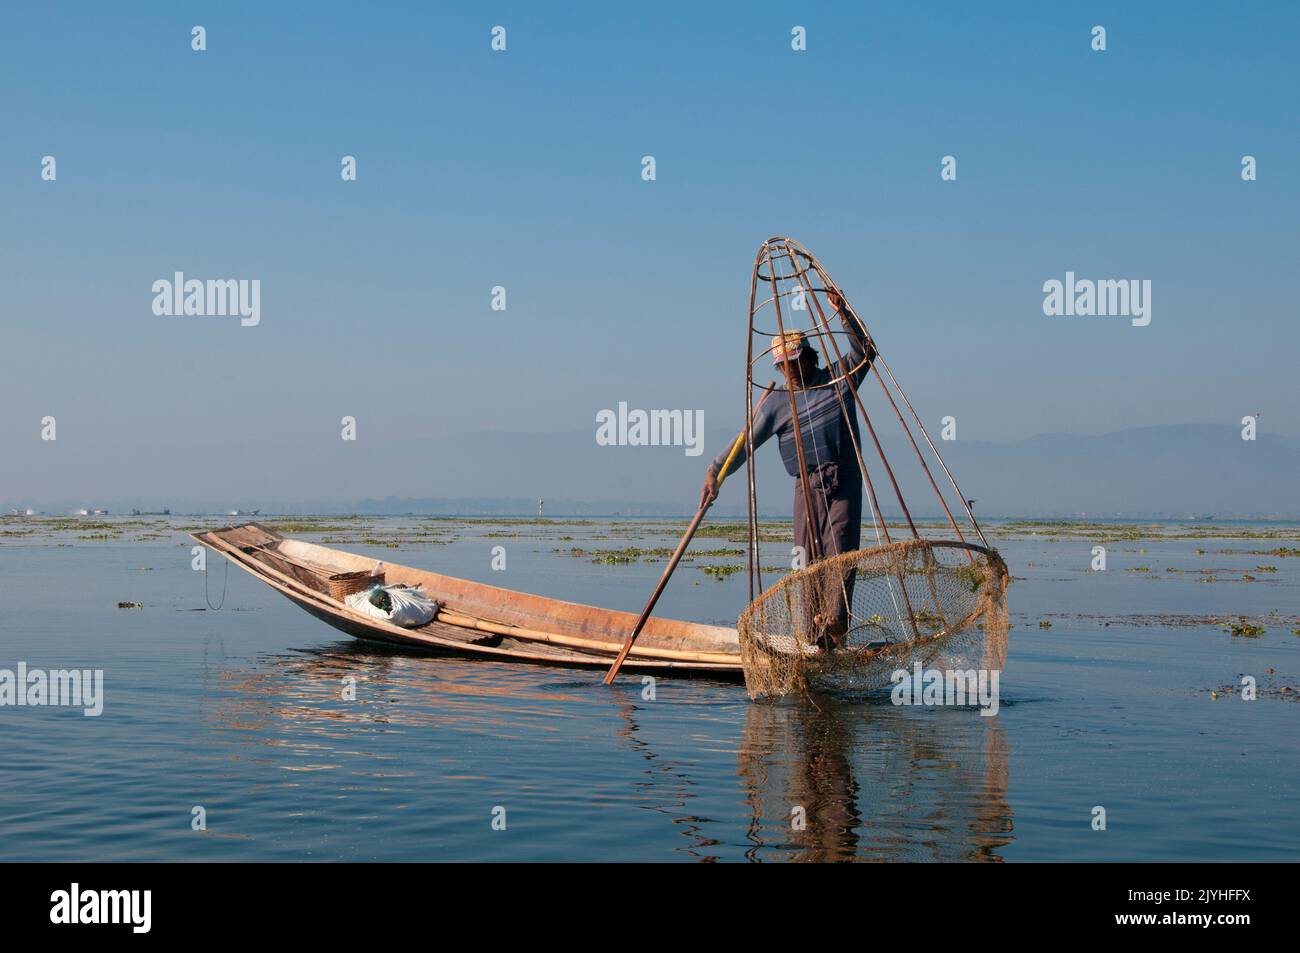 Birmania / Myanmar: Un pescador Intha de remo pierna muestra sus habilidades con una gran trampa cónica de peces en el lago Inle, estado de Shan. El Lago Inle es un lago de agua dulce situado en el estado de Shan. Es el segundo lago más grande de Myanmar y uno de los más altos a una altitud de 880 m (2.900 pies). La gente del Lago Inle (llamada Intha), unos 70.000 de ellos, viven en cuatro pueblos que bordean el lago, en numerosos pueblos pequeños a lo largo de las orillas del lago, y en el mismo lago. La población consiste predominantemente de Intha, con una mezcla de otros Shan, Taungyo, Pa-O (Taungthu), Danu, Kayah, Grupos étnicos de Danaw y Bamar. Foto de stock